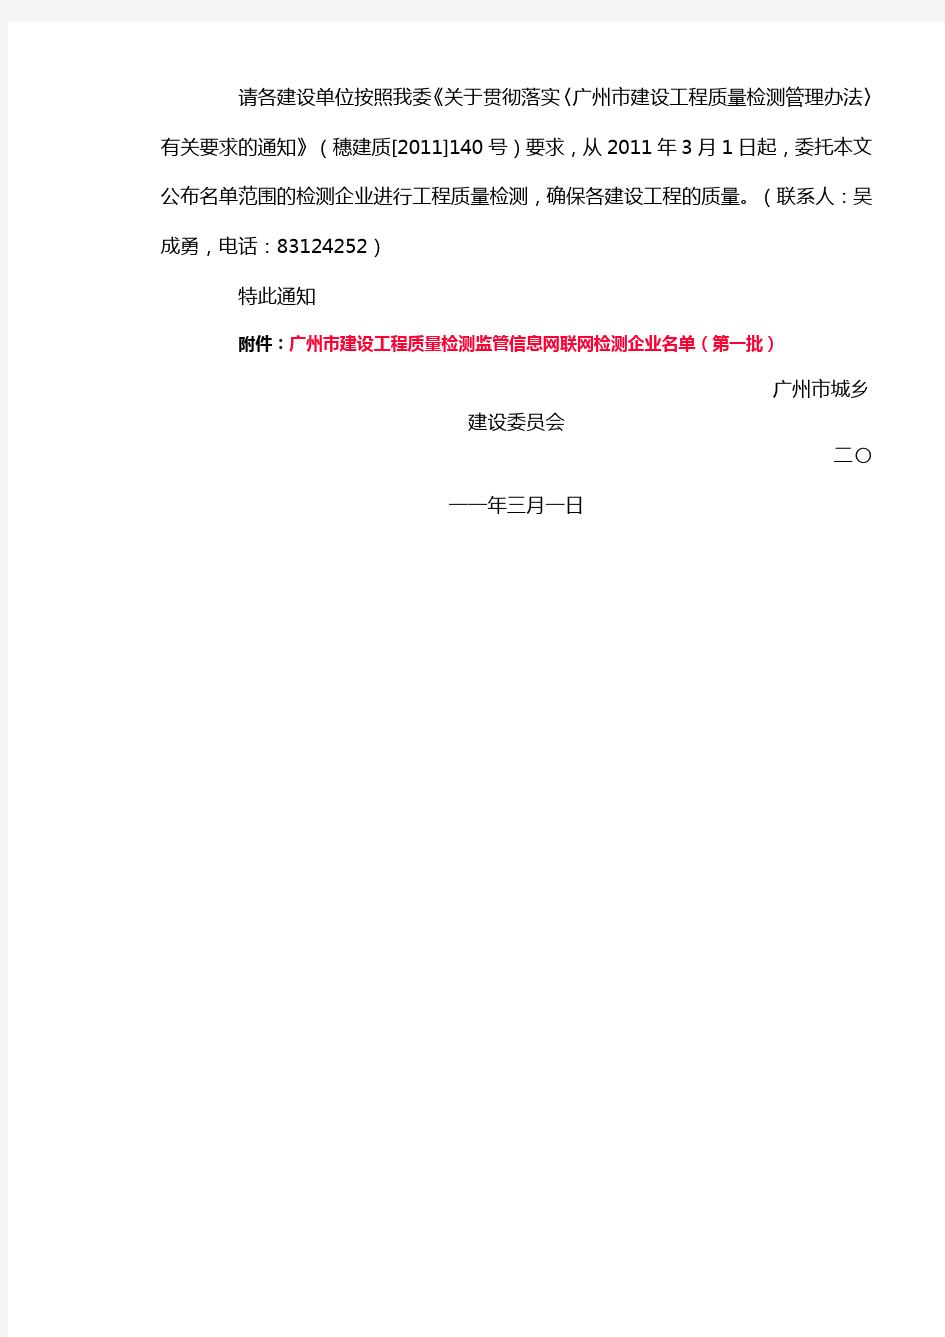 关于公布广州市建设工程质量检测监管信息网联网检测企业名单(第一批)的通知